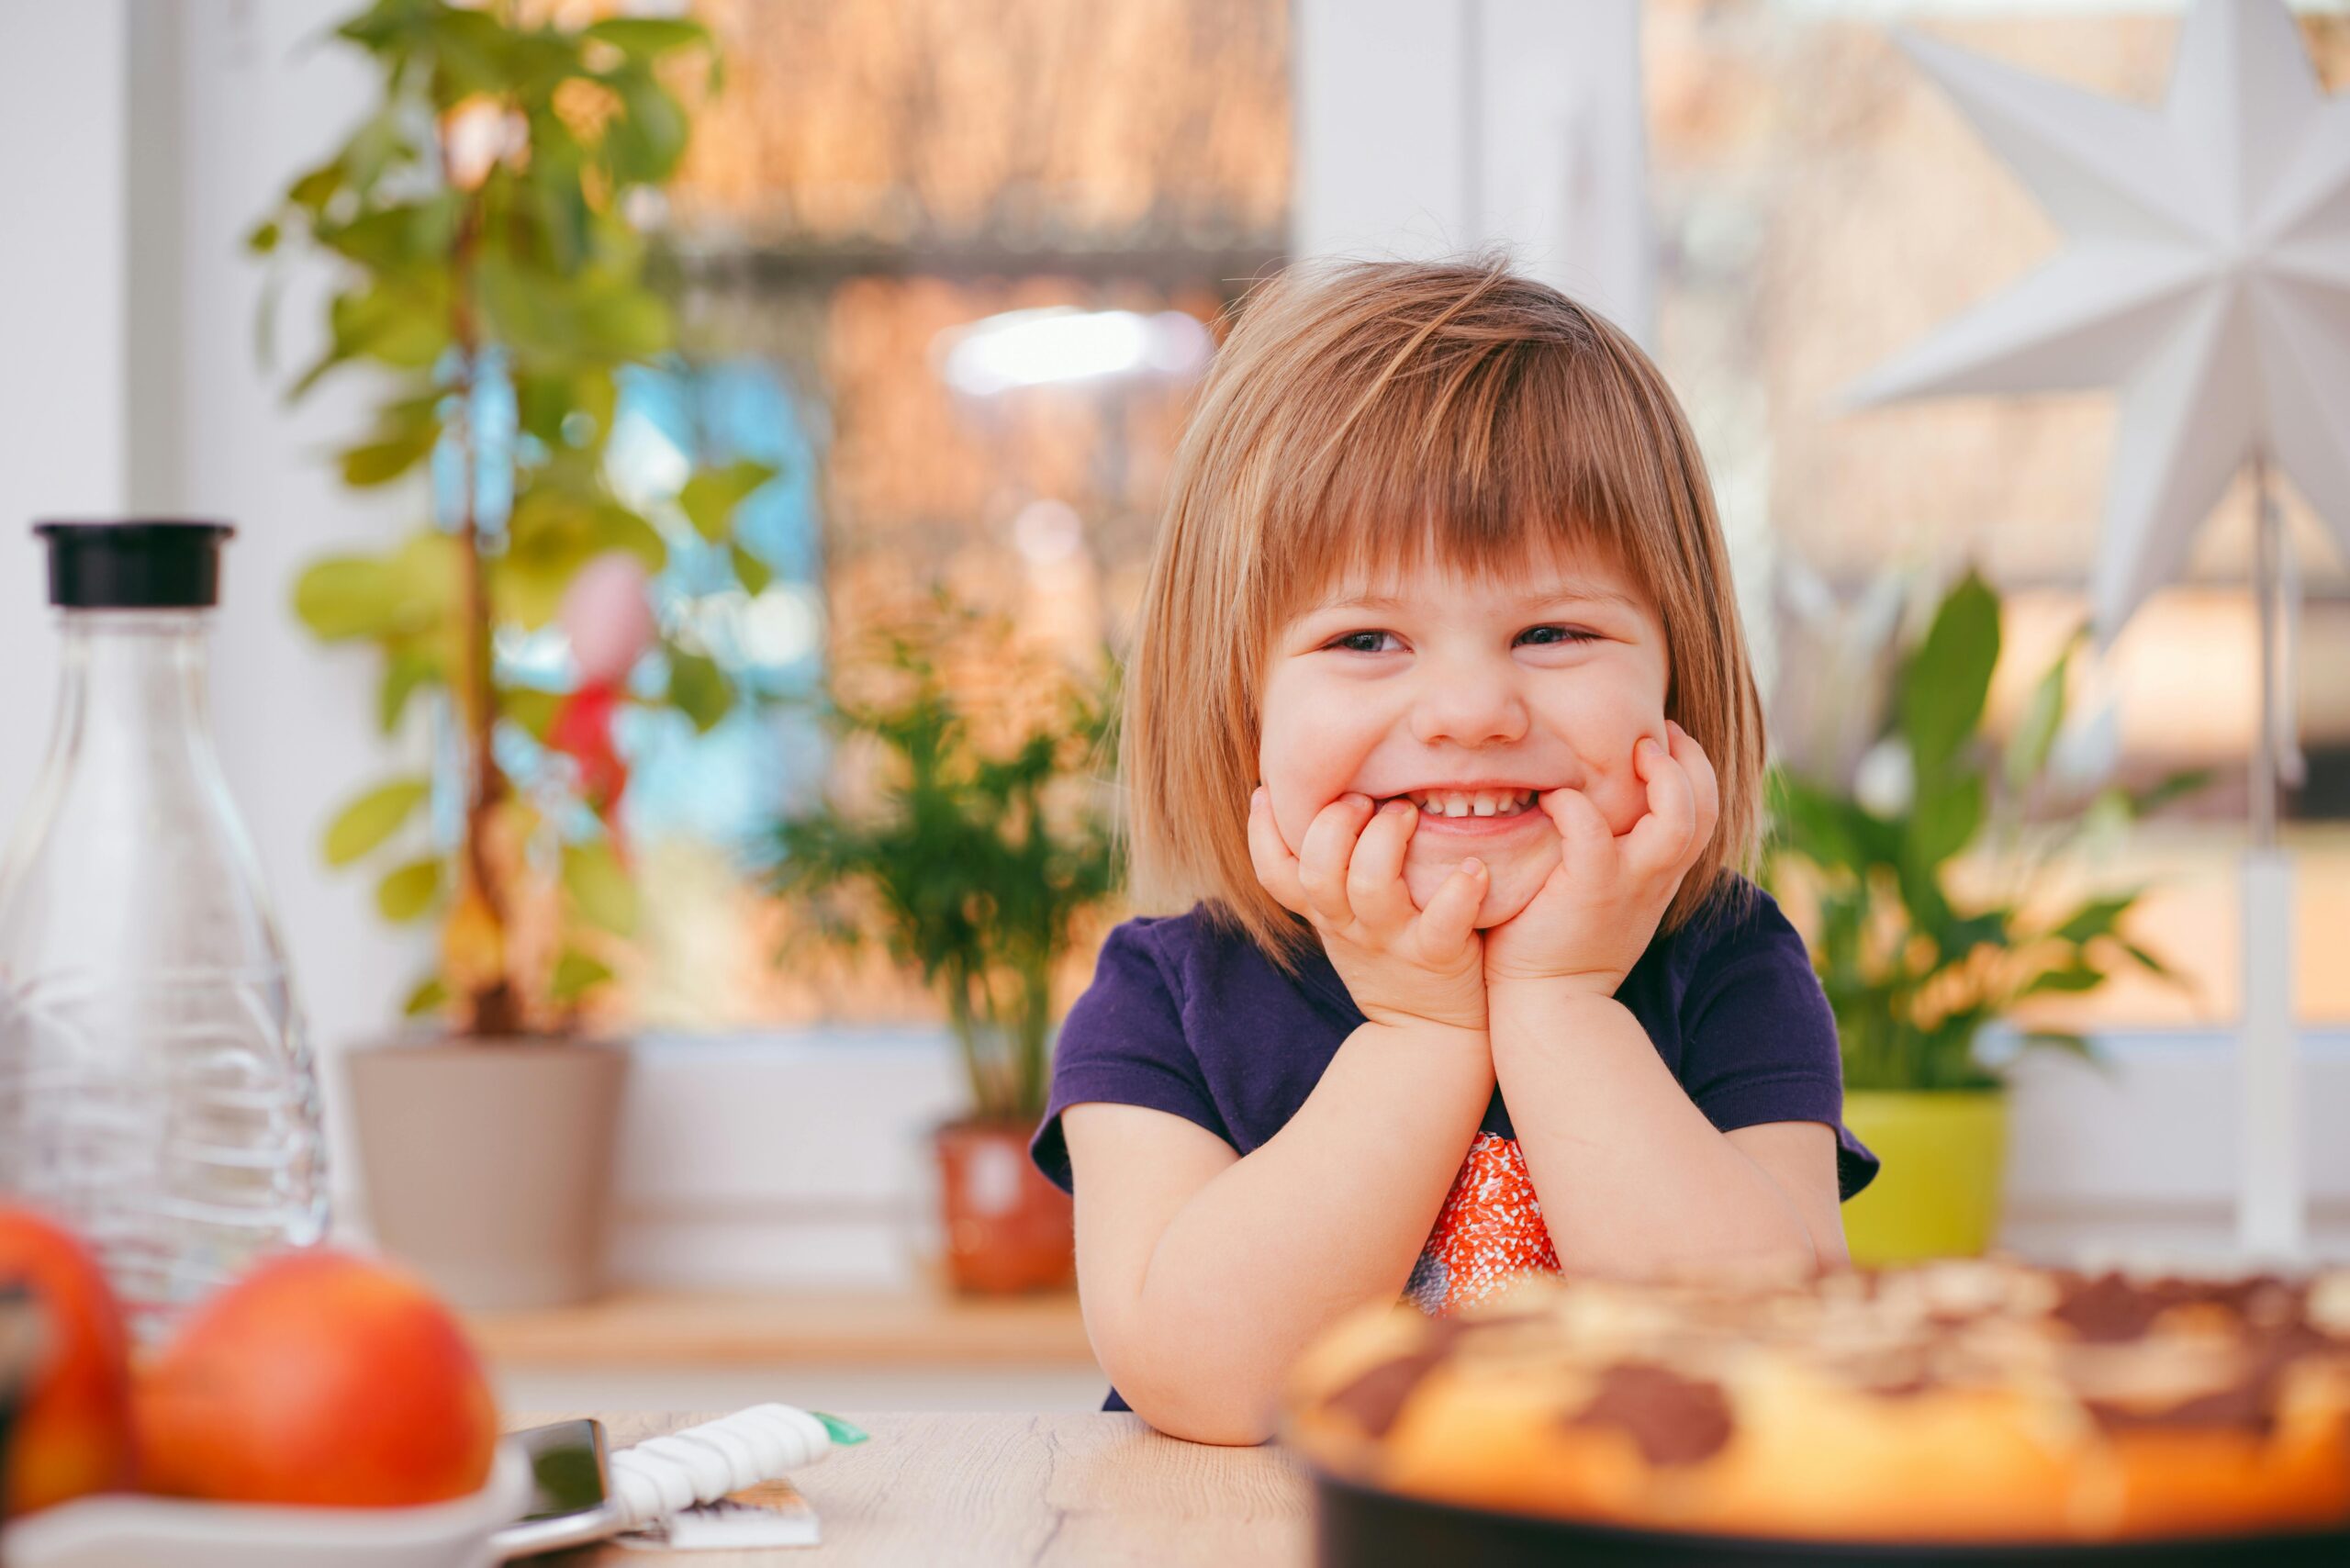 أعراض نقص الزنك عند الأطفال.. وأهم الأطعمة الغنية بالزنك